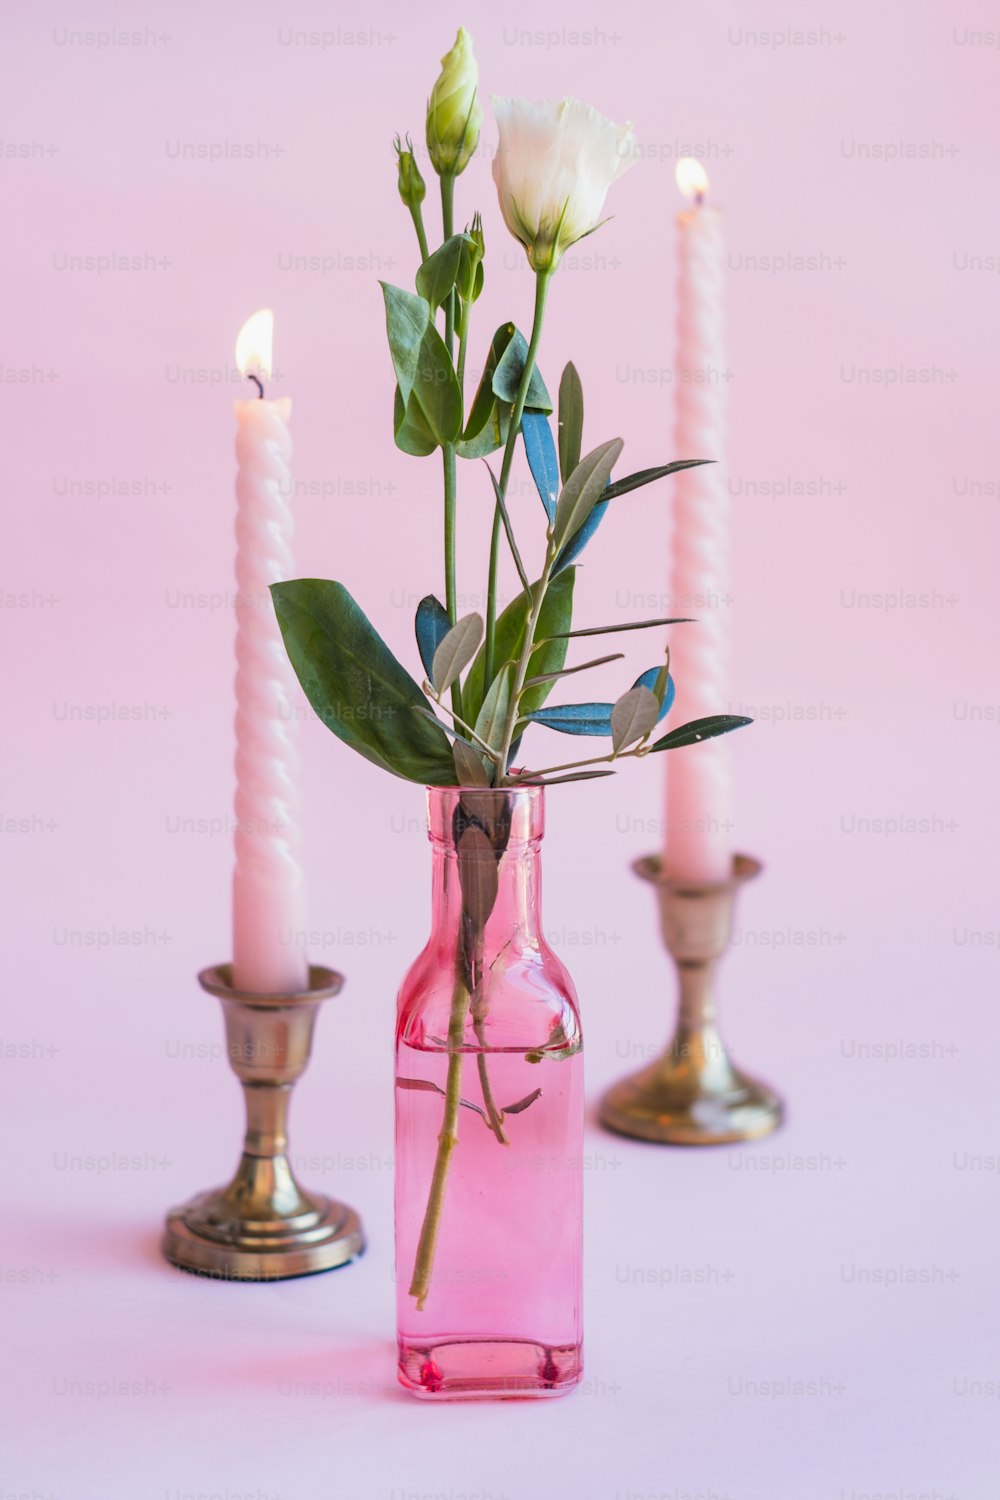 Un jarrón rosa lleno de flores junto a dos velas